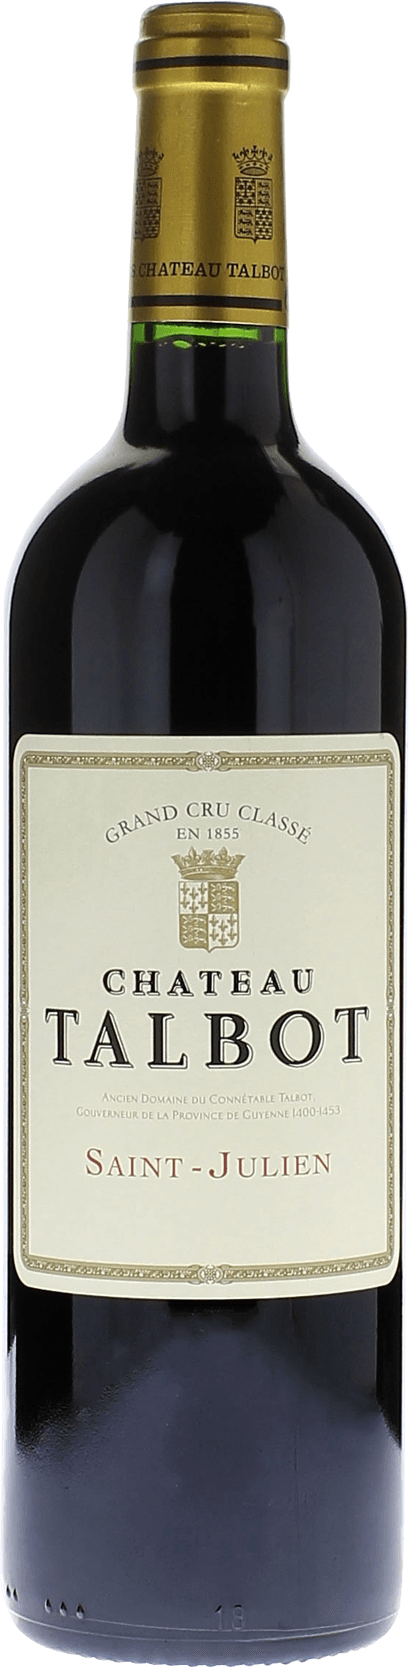 Talbot 2000 4me Grand cru class Saint-Julien, Bordeaux rouge